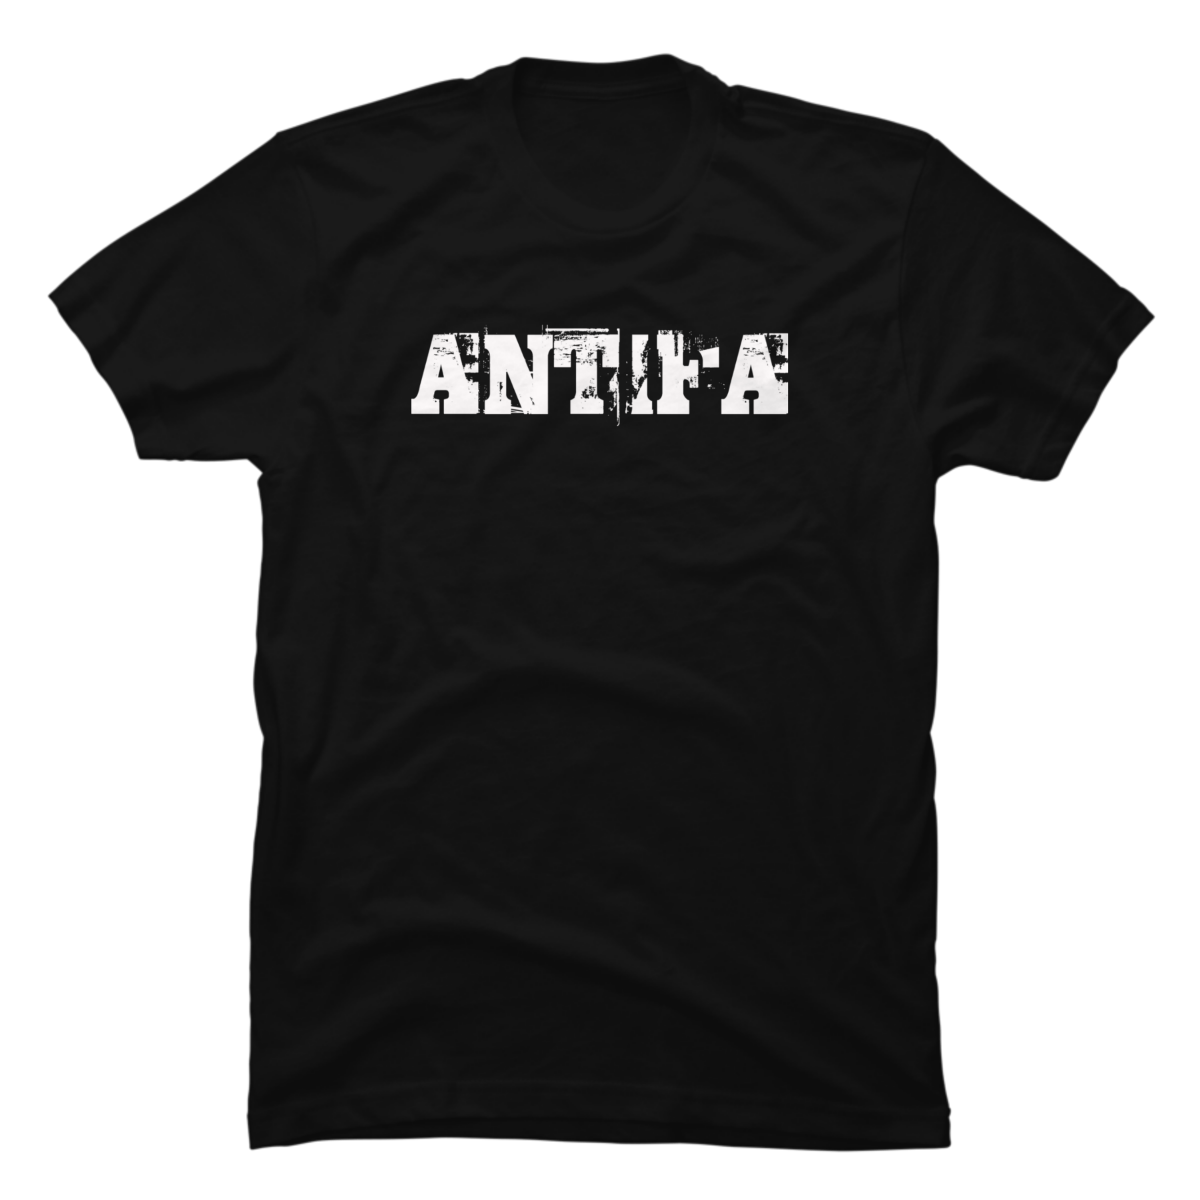 antifaschistische aktion shirt